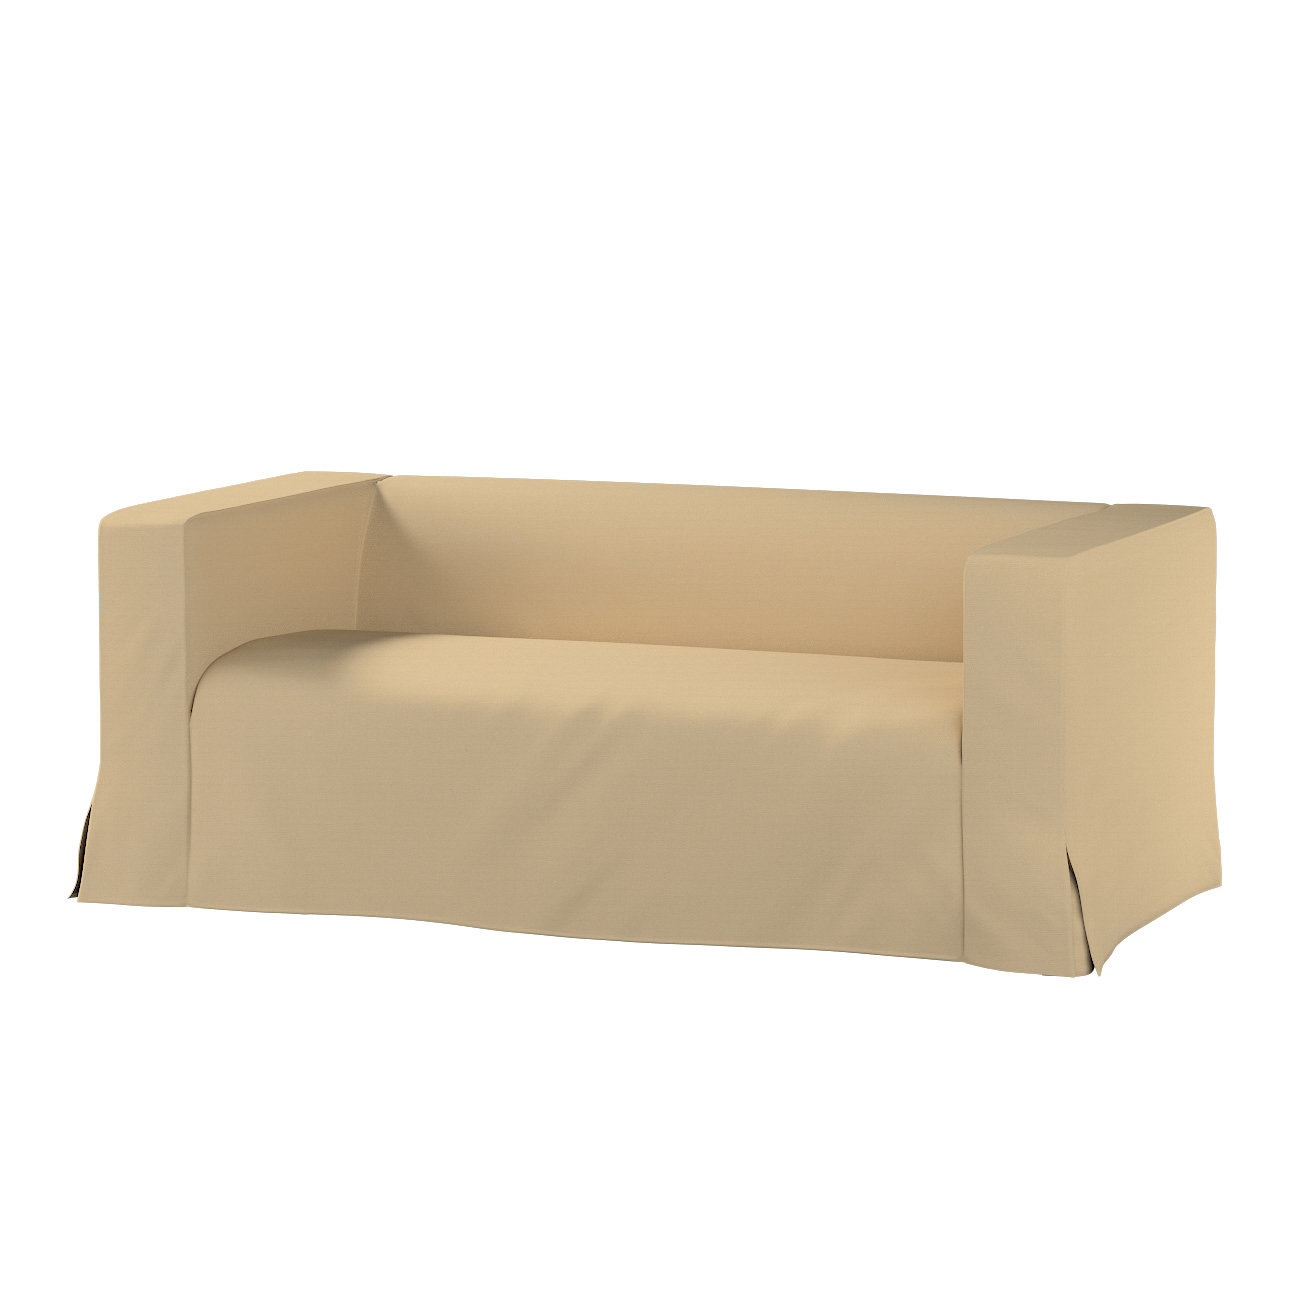 Bezug für Klippan 2-Sitzer Sofa, lang mit Kellerfalte, caffe latte, Klippan günstig online kaufen